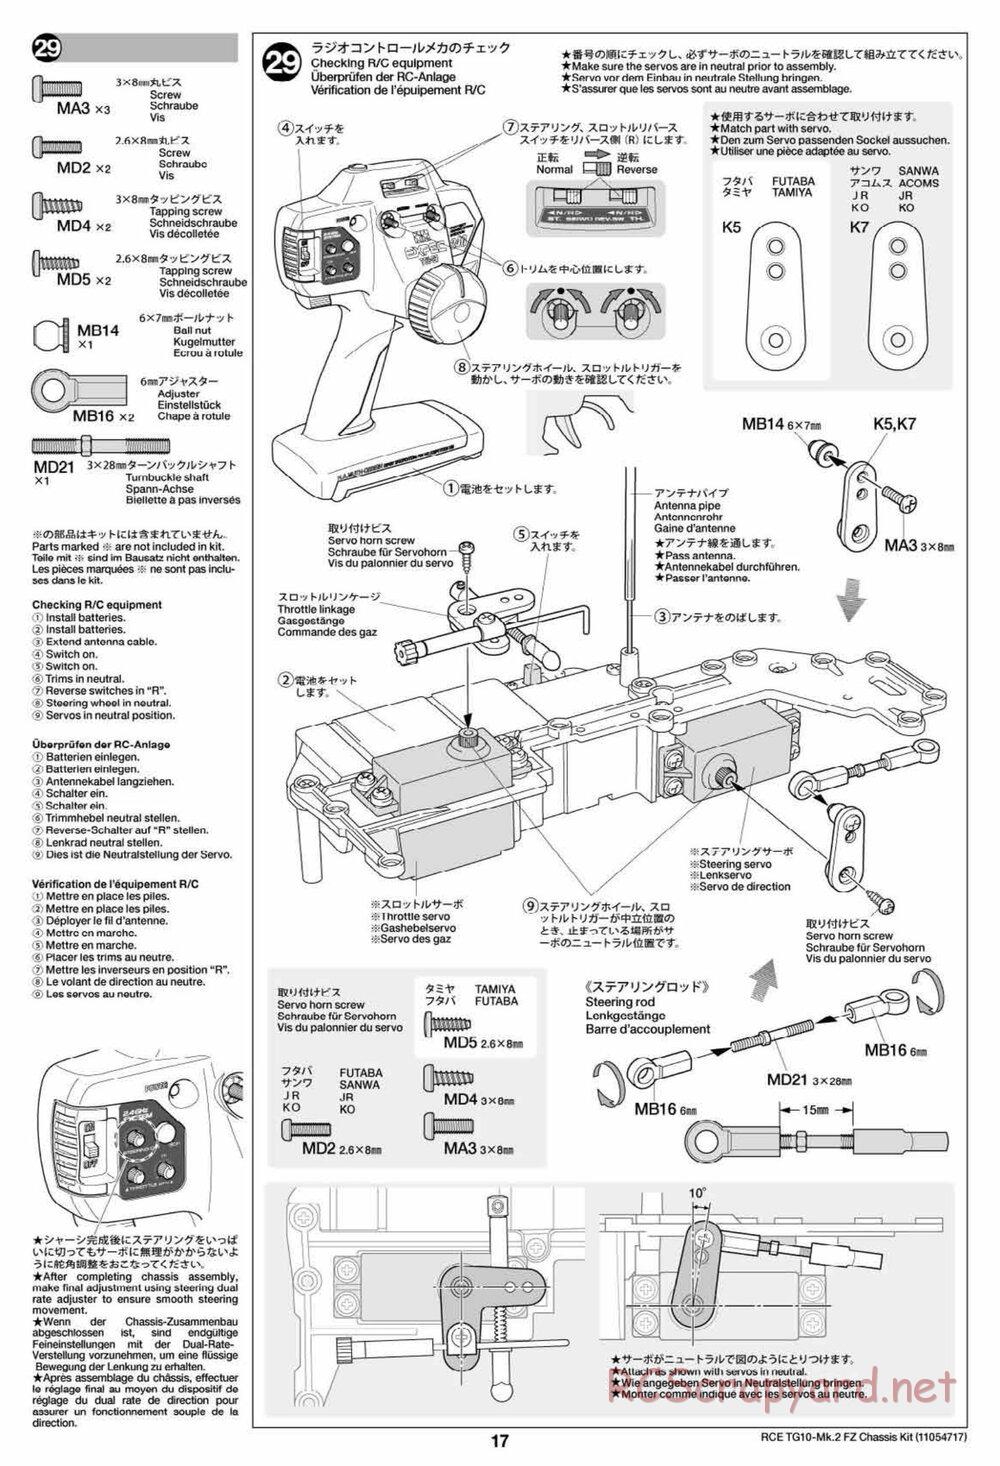 Tamiya - TG10 Mk.2 FZ Chassis - Manual - Page 17